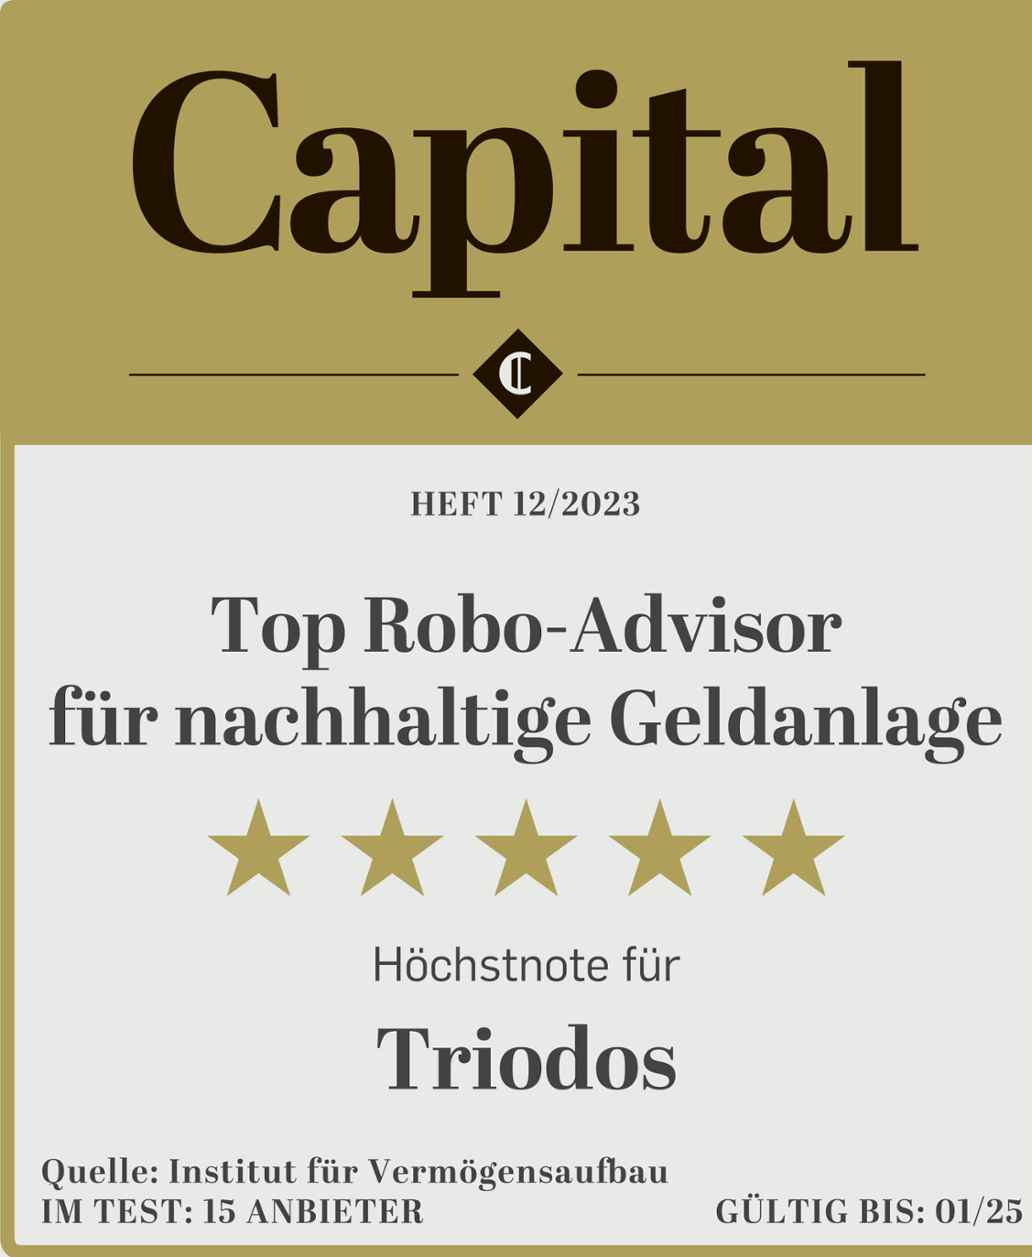 Capital: Höchstnote als Top Robo-Advisor für nachhaltige Geldanlage